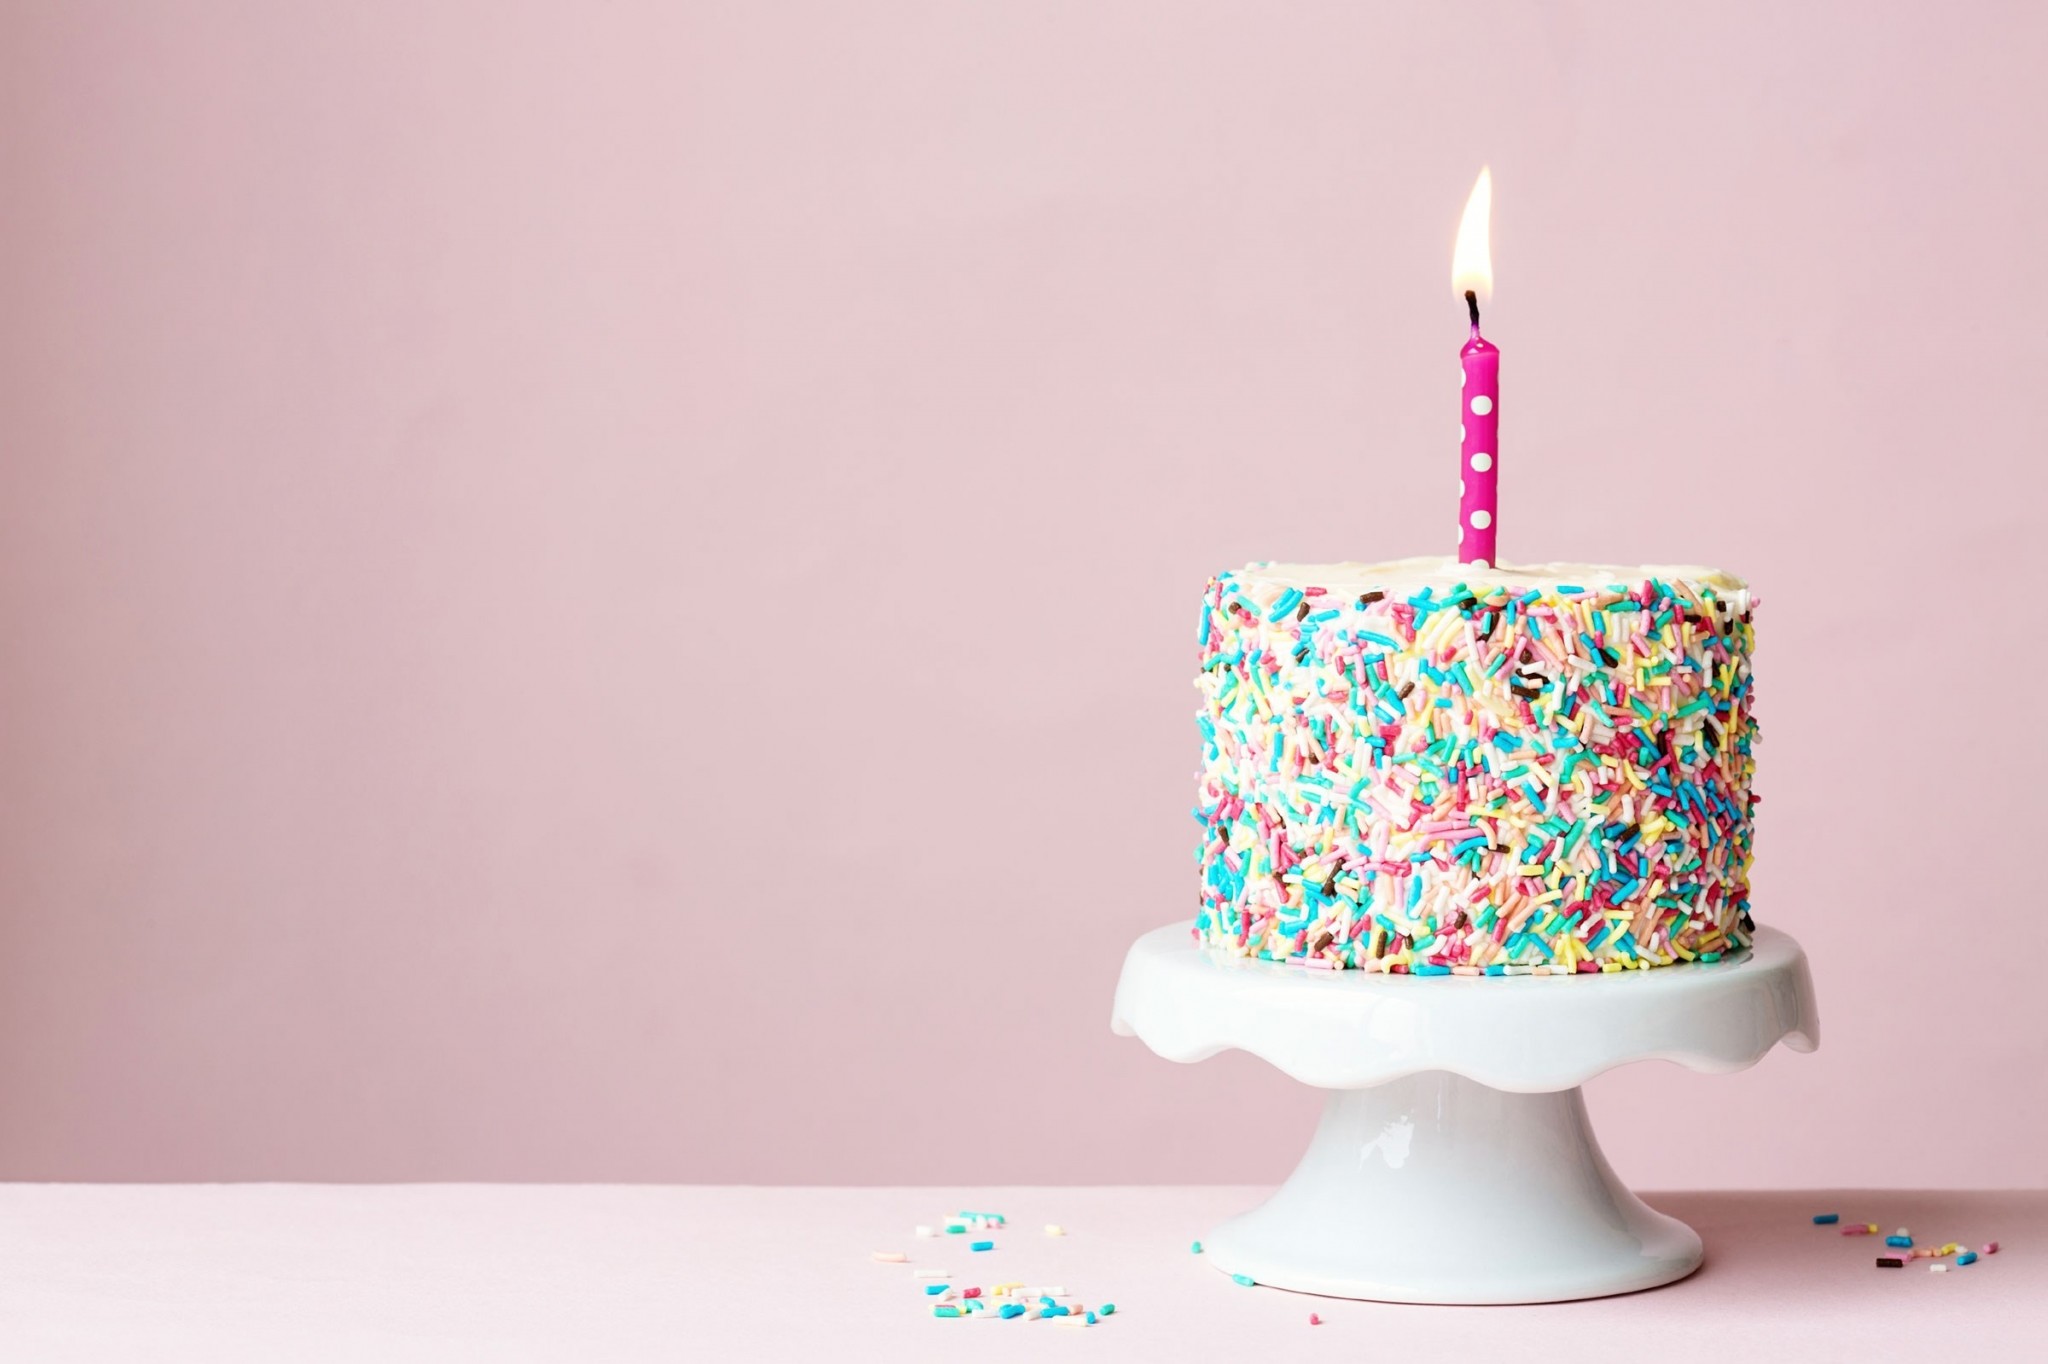 お誕生日おめでとう壁紙,ケーキ,誕生日キャンドル,誕生日ケーキ,ピンク,キャンドル